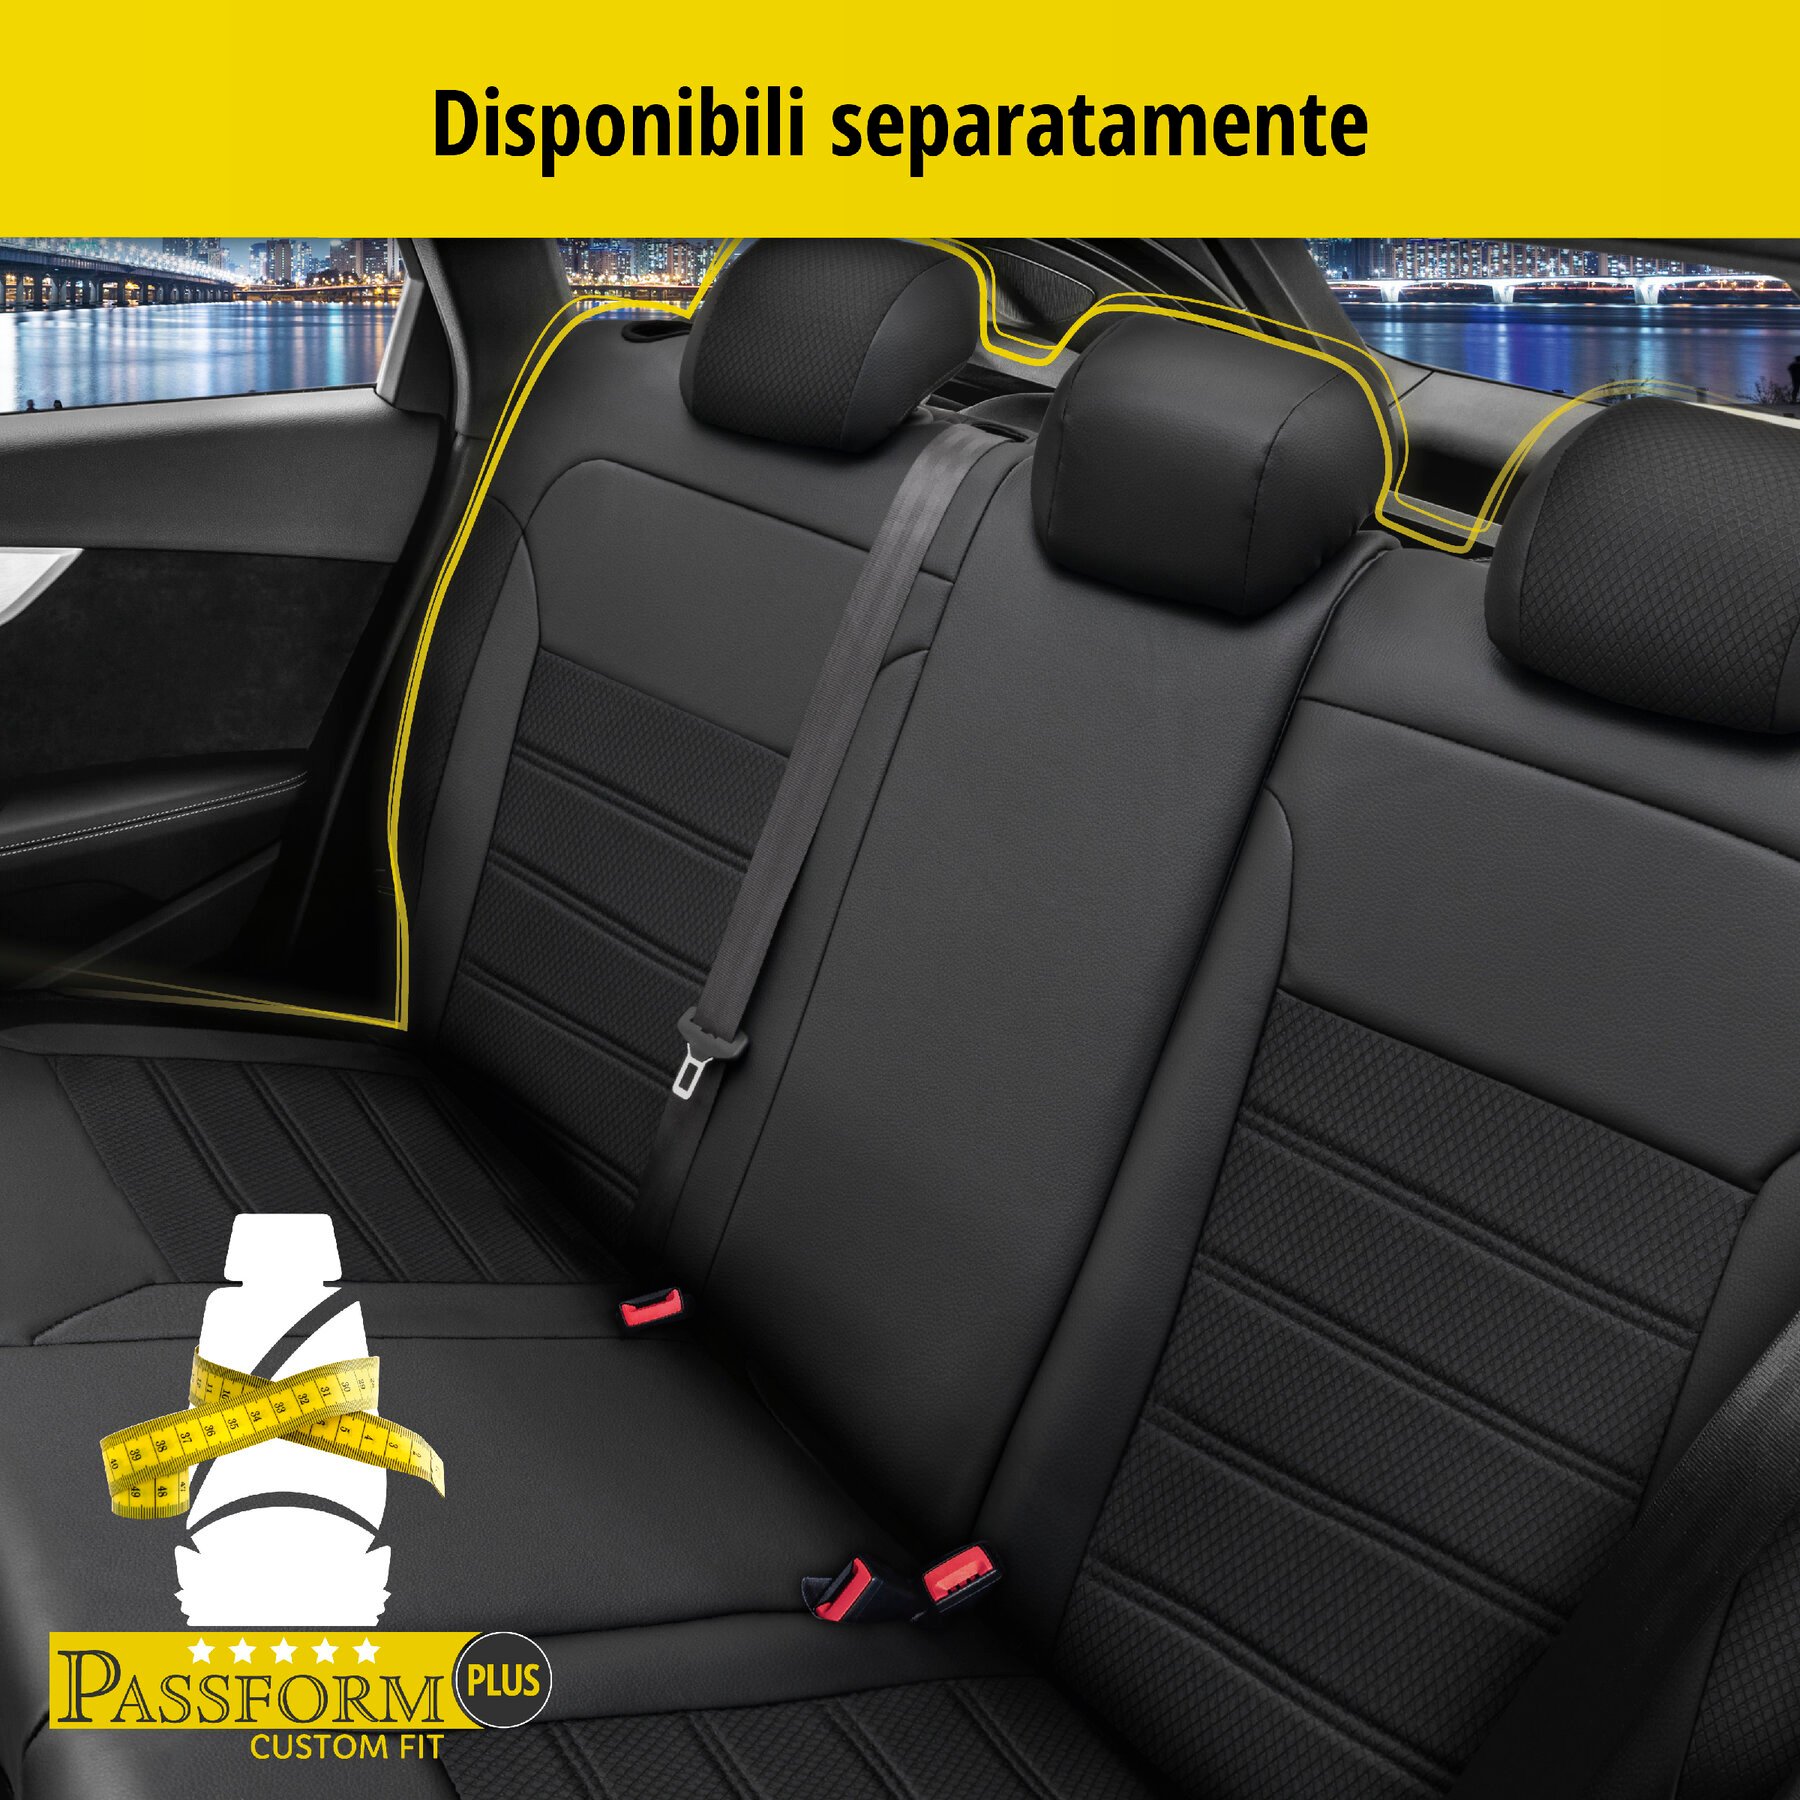 Coprisedili Aversa per Fiat Grande Punto (199) 06/2005-Oggi, 2 coprisedili per sedili normali